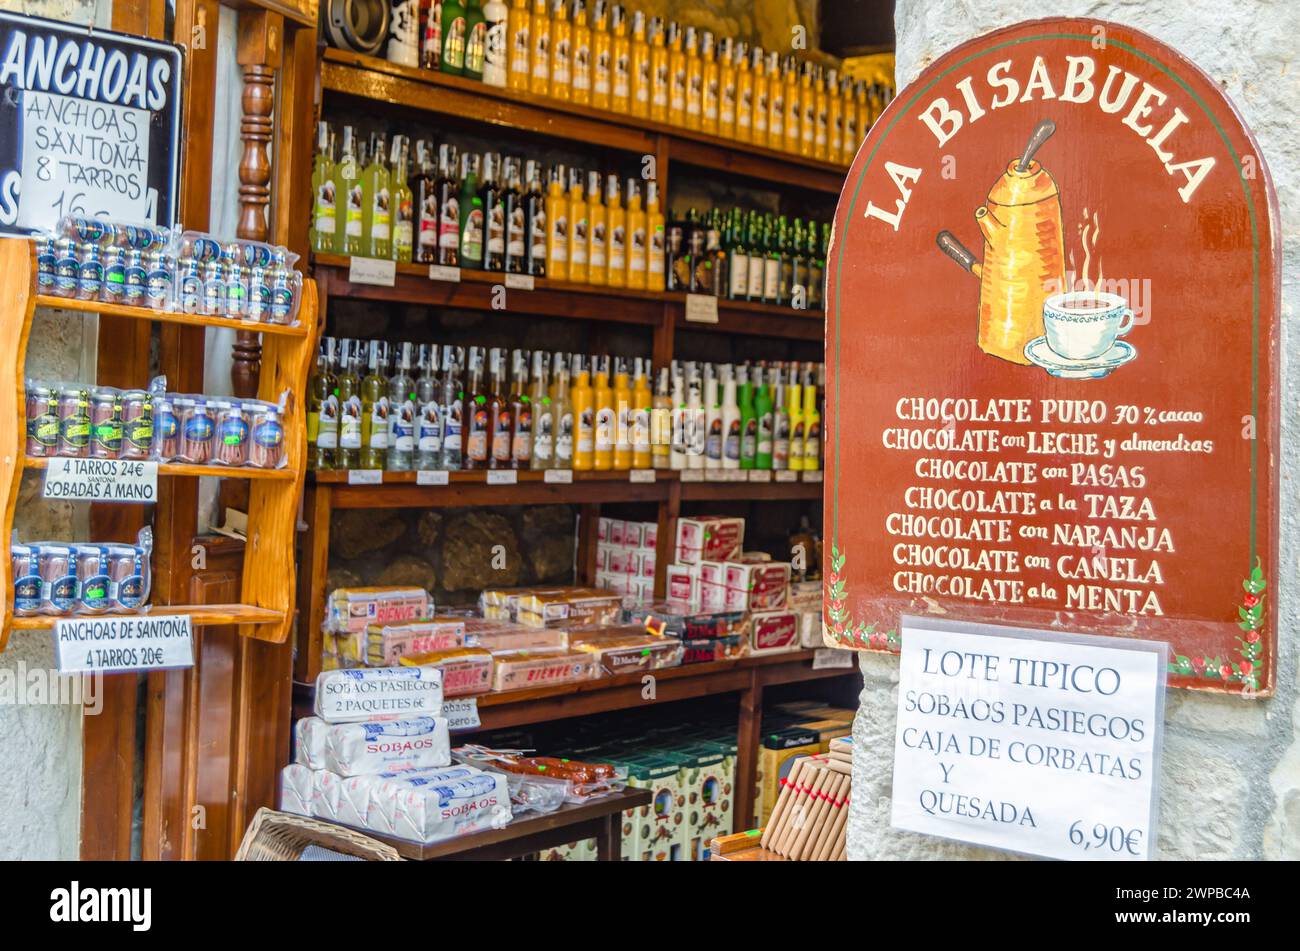 SANTILLANA DEL Mar, ESPAGNE - 2 MAI 2014 : magasin avec des produits alimentaires typiques de Cantabrie dans la ville de Santillana del Mar, dans le nord de l'Espagne Banque D'Images